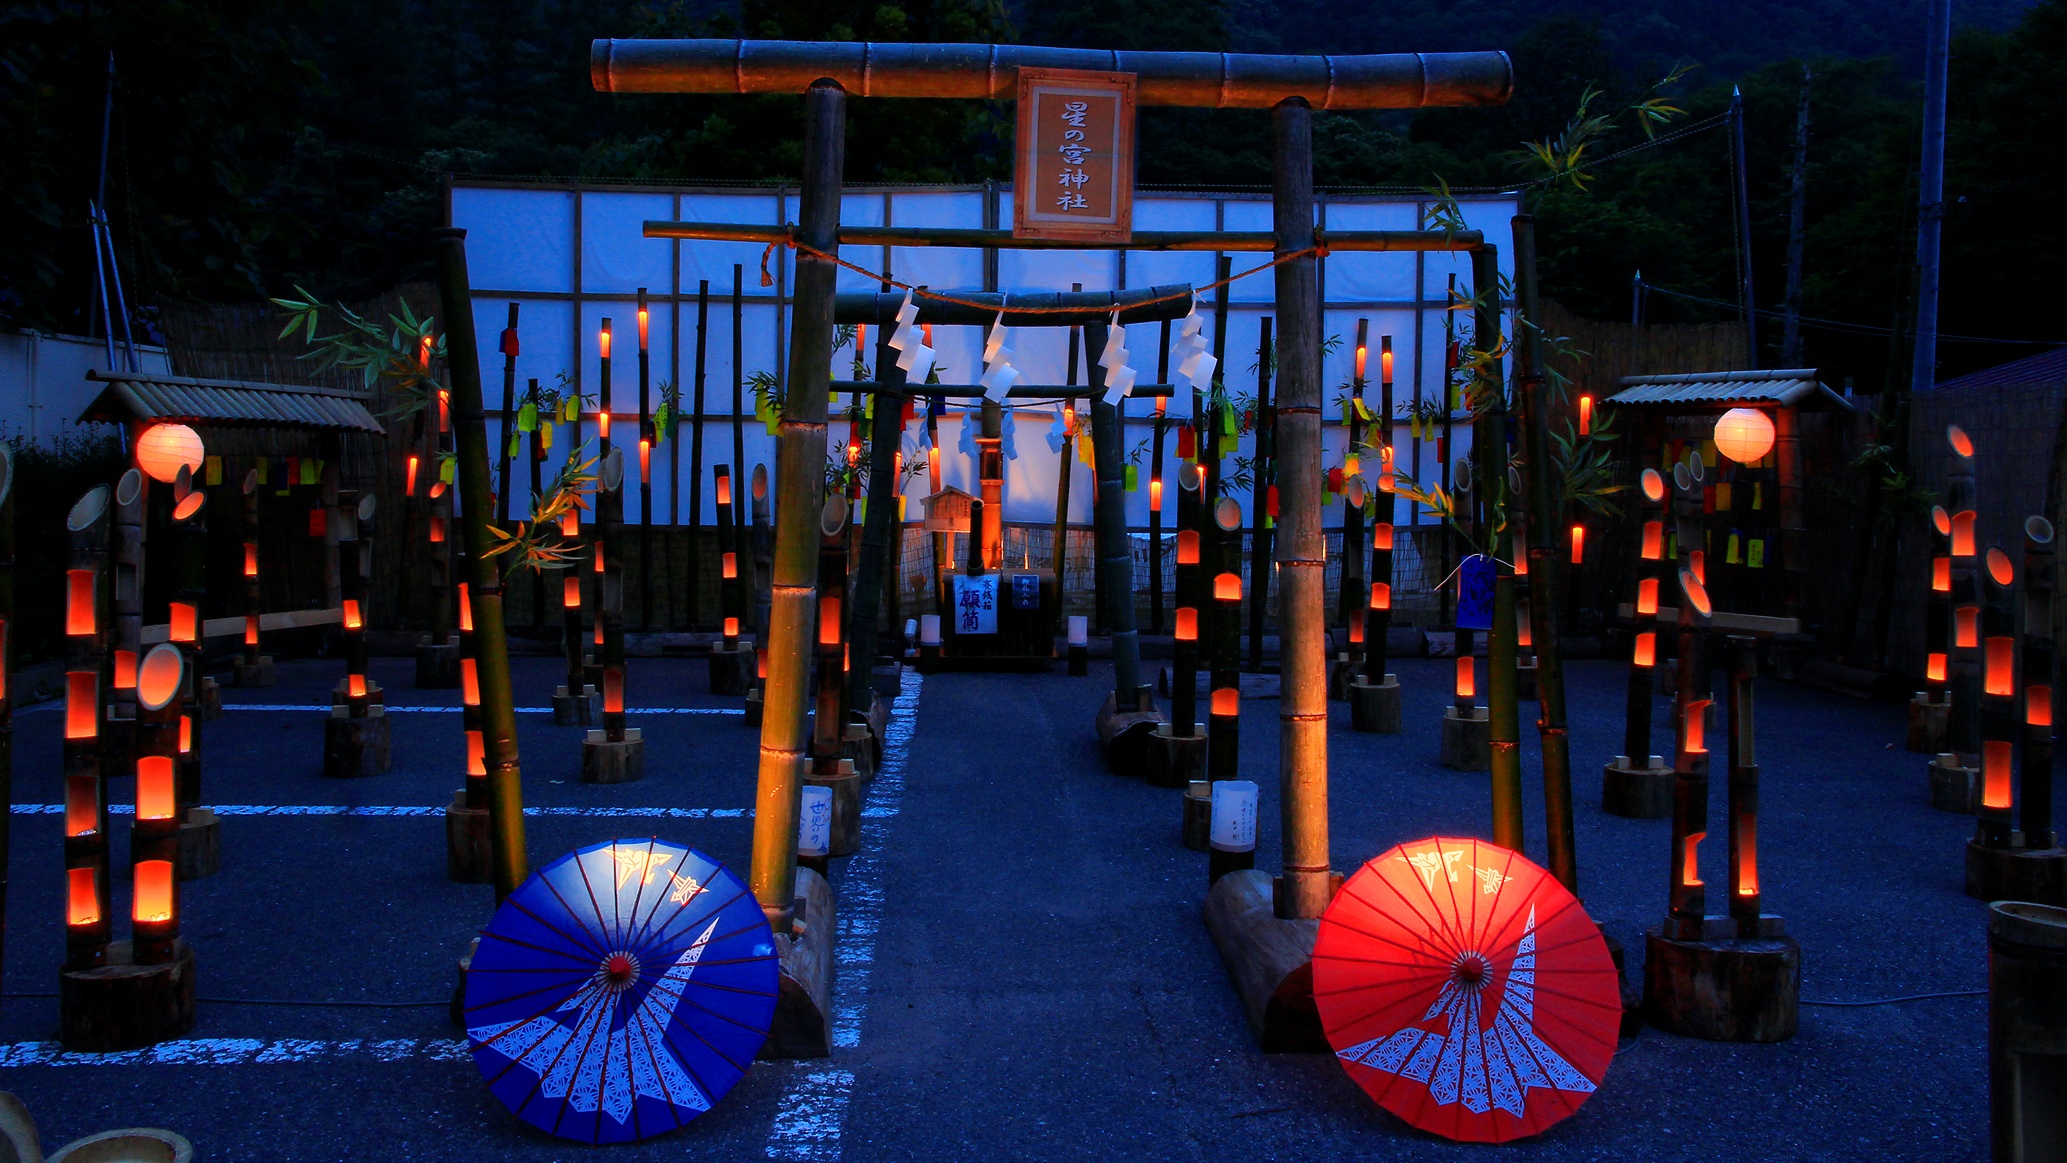 【竹の宵祭り】竹灯篭のロウソクのあかりは、その日限りの二度とは見られない光景♪夏の夜の思い出に^^♪